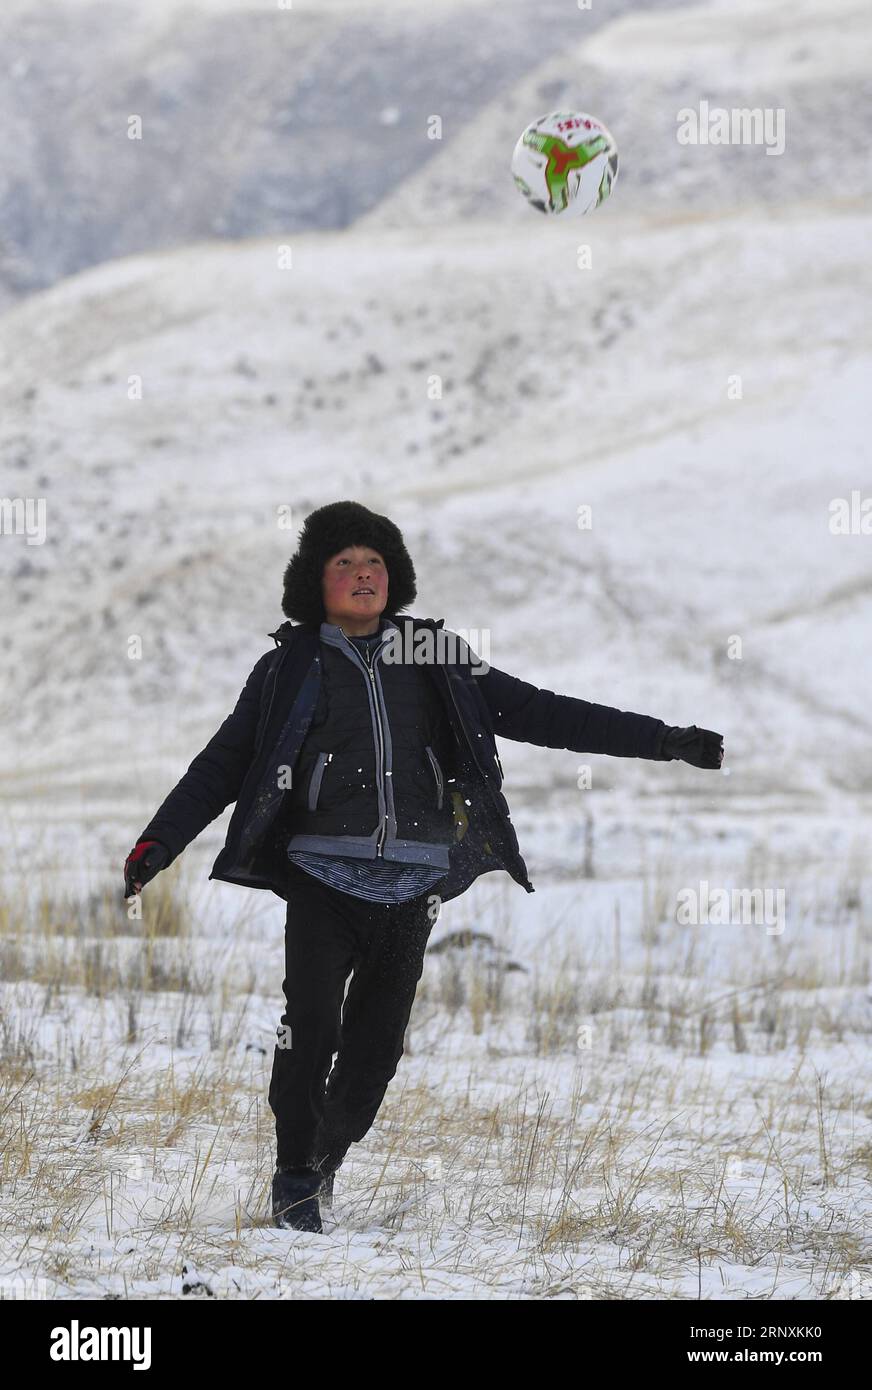 (180203) -- ILI, 3 febbraio 2018 -- Yeyeni, 14, gioca a calcio sul pascolo nella valle di Akyaz, nella contea di Zhaosu, nella regione autonoma di Xinjiang Uygur della Cina nord-occidentale, 16 gennaio 2018. Trascorrerà le vacanze invernali con i suoi genitori nella valle. A circa 130 chilometri dalla città più vicina, la valle di Akyaz è un importante luogo di pascolo invernale per i pastori della contea di Zhaosu, nello Xinjiang. Nonostante un'altitudine di 2.000 metri, la valle di Akyaz ha un clima più caldo rispetto alle aree circostanti e abbondante erba e acqua. A volte viene definita la valle della vita. Per secoli, l'allevamento è stato un tr ancestrale Foto Stock